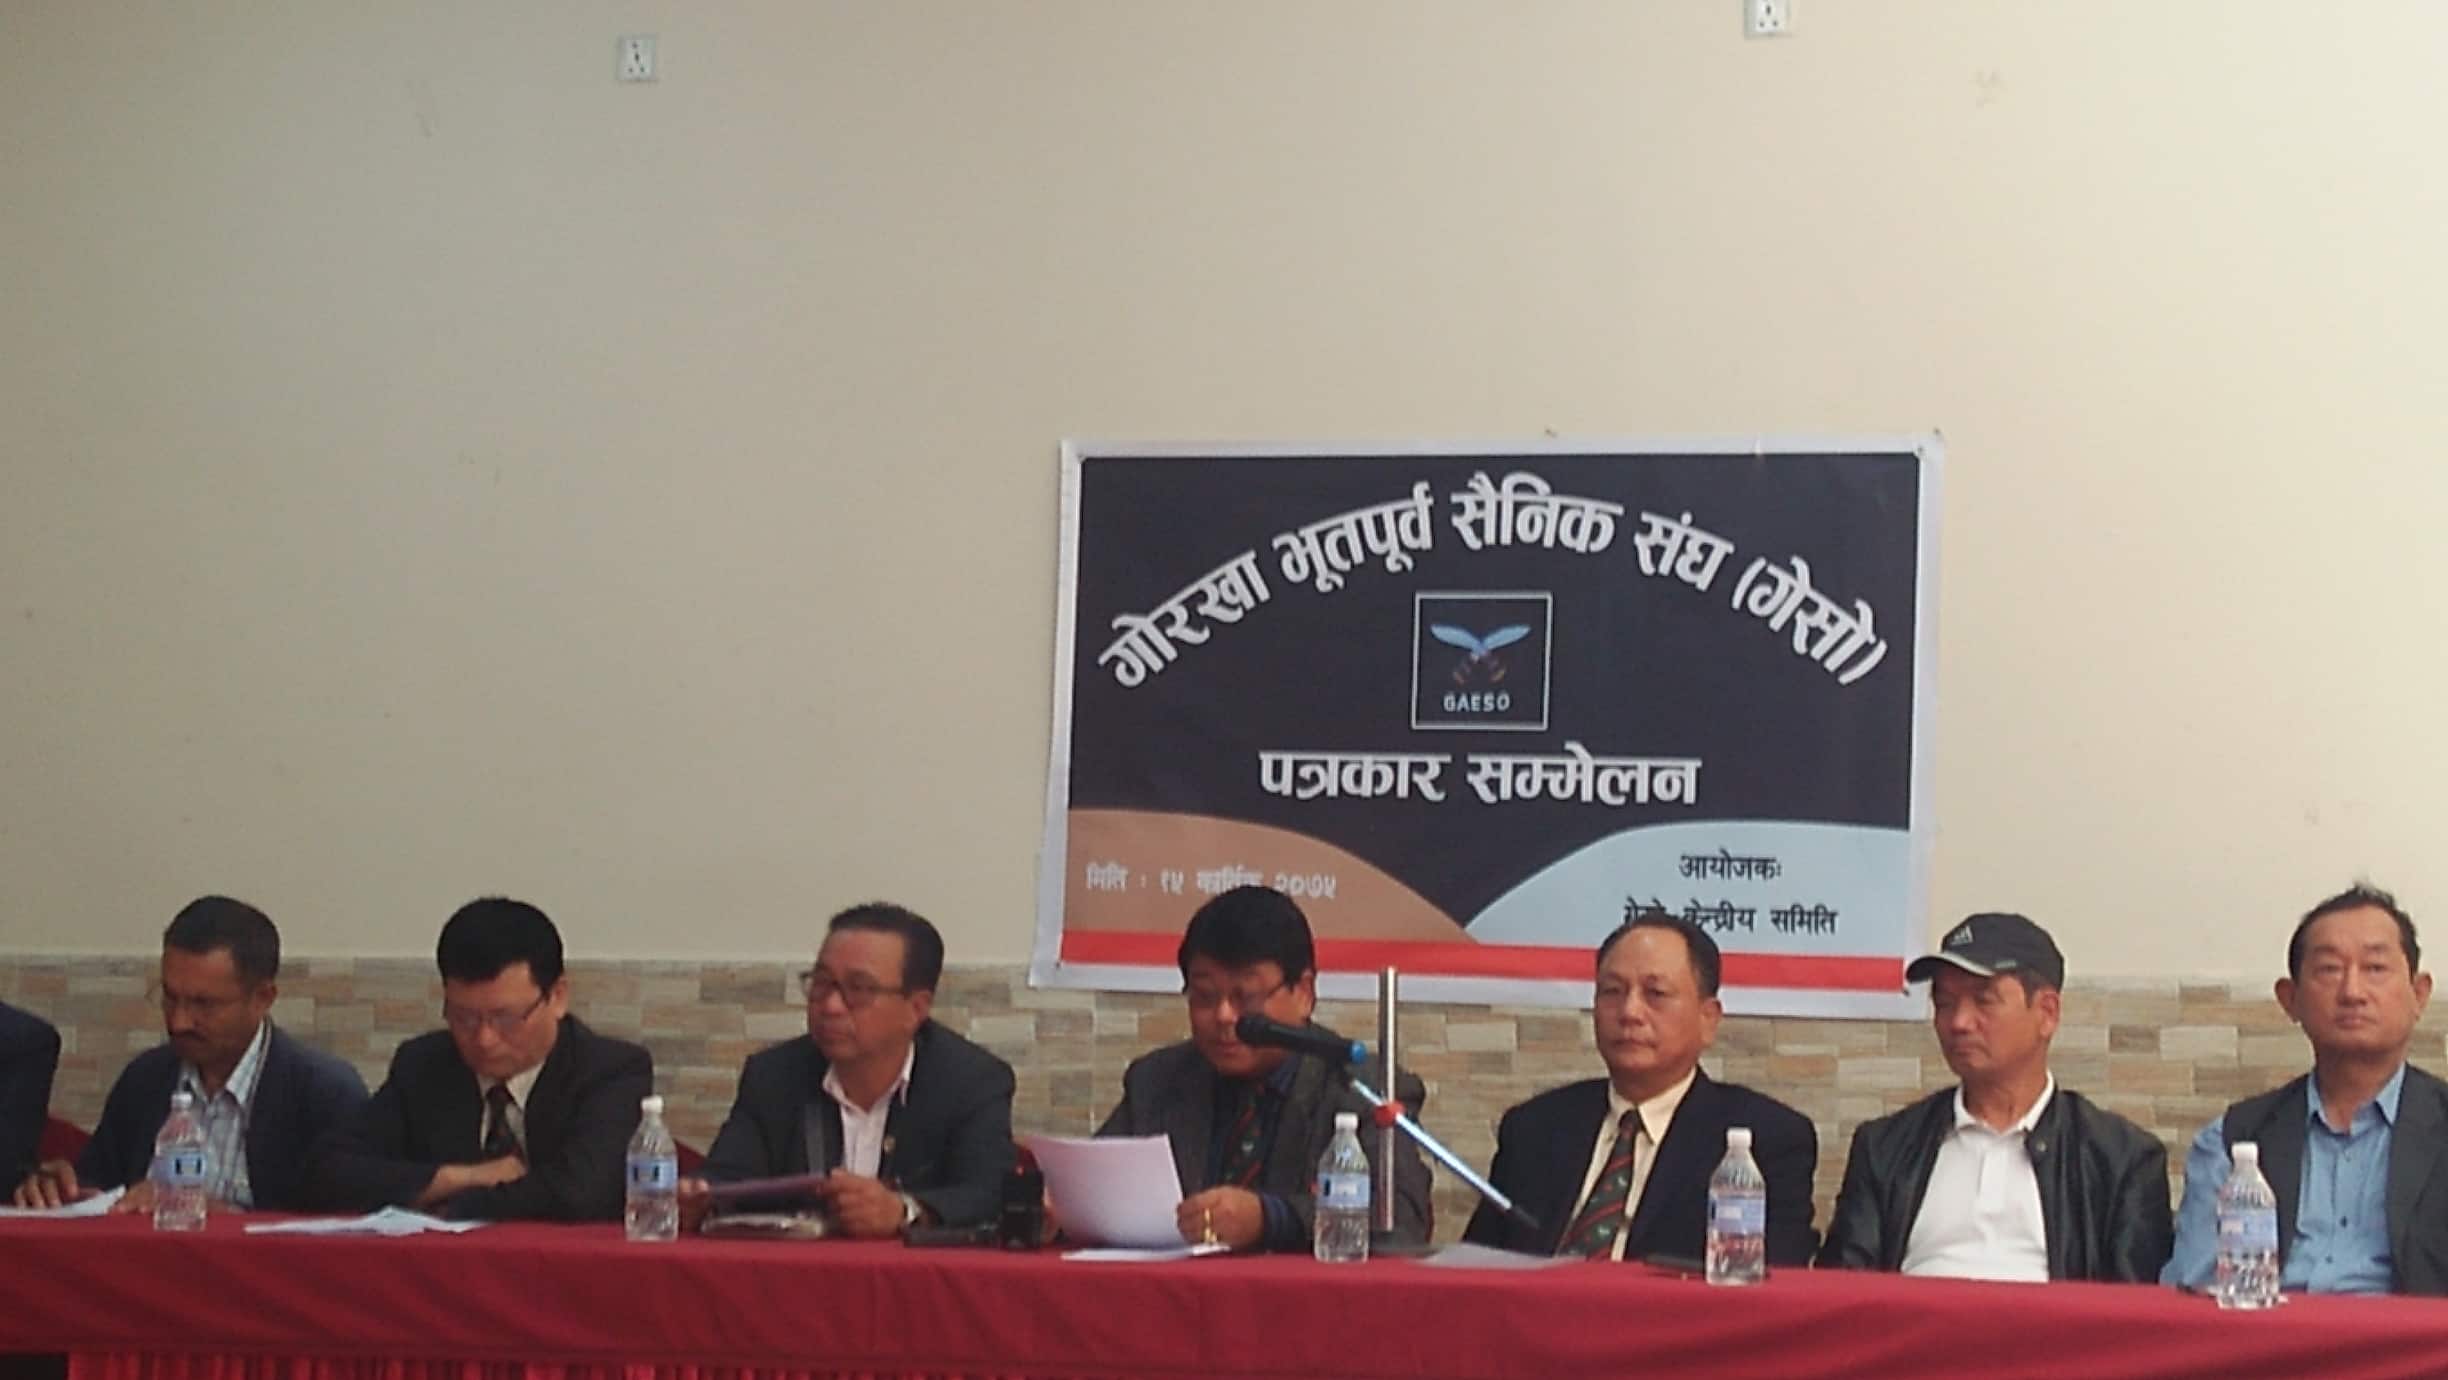 बेलायत र नेपाल सरकारलाई गेसोको प्रश्न :  छ महिना बित्दासमेत किन बनेन वार्ता समिति,गोरखा भर्तीबाट के पायो नेपालले?